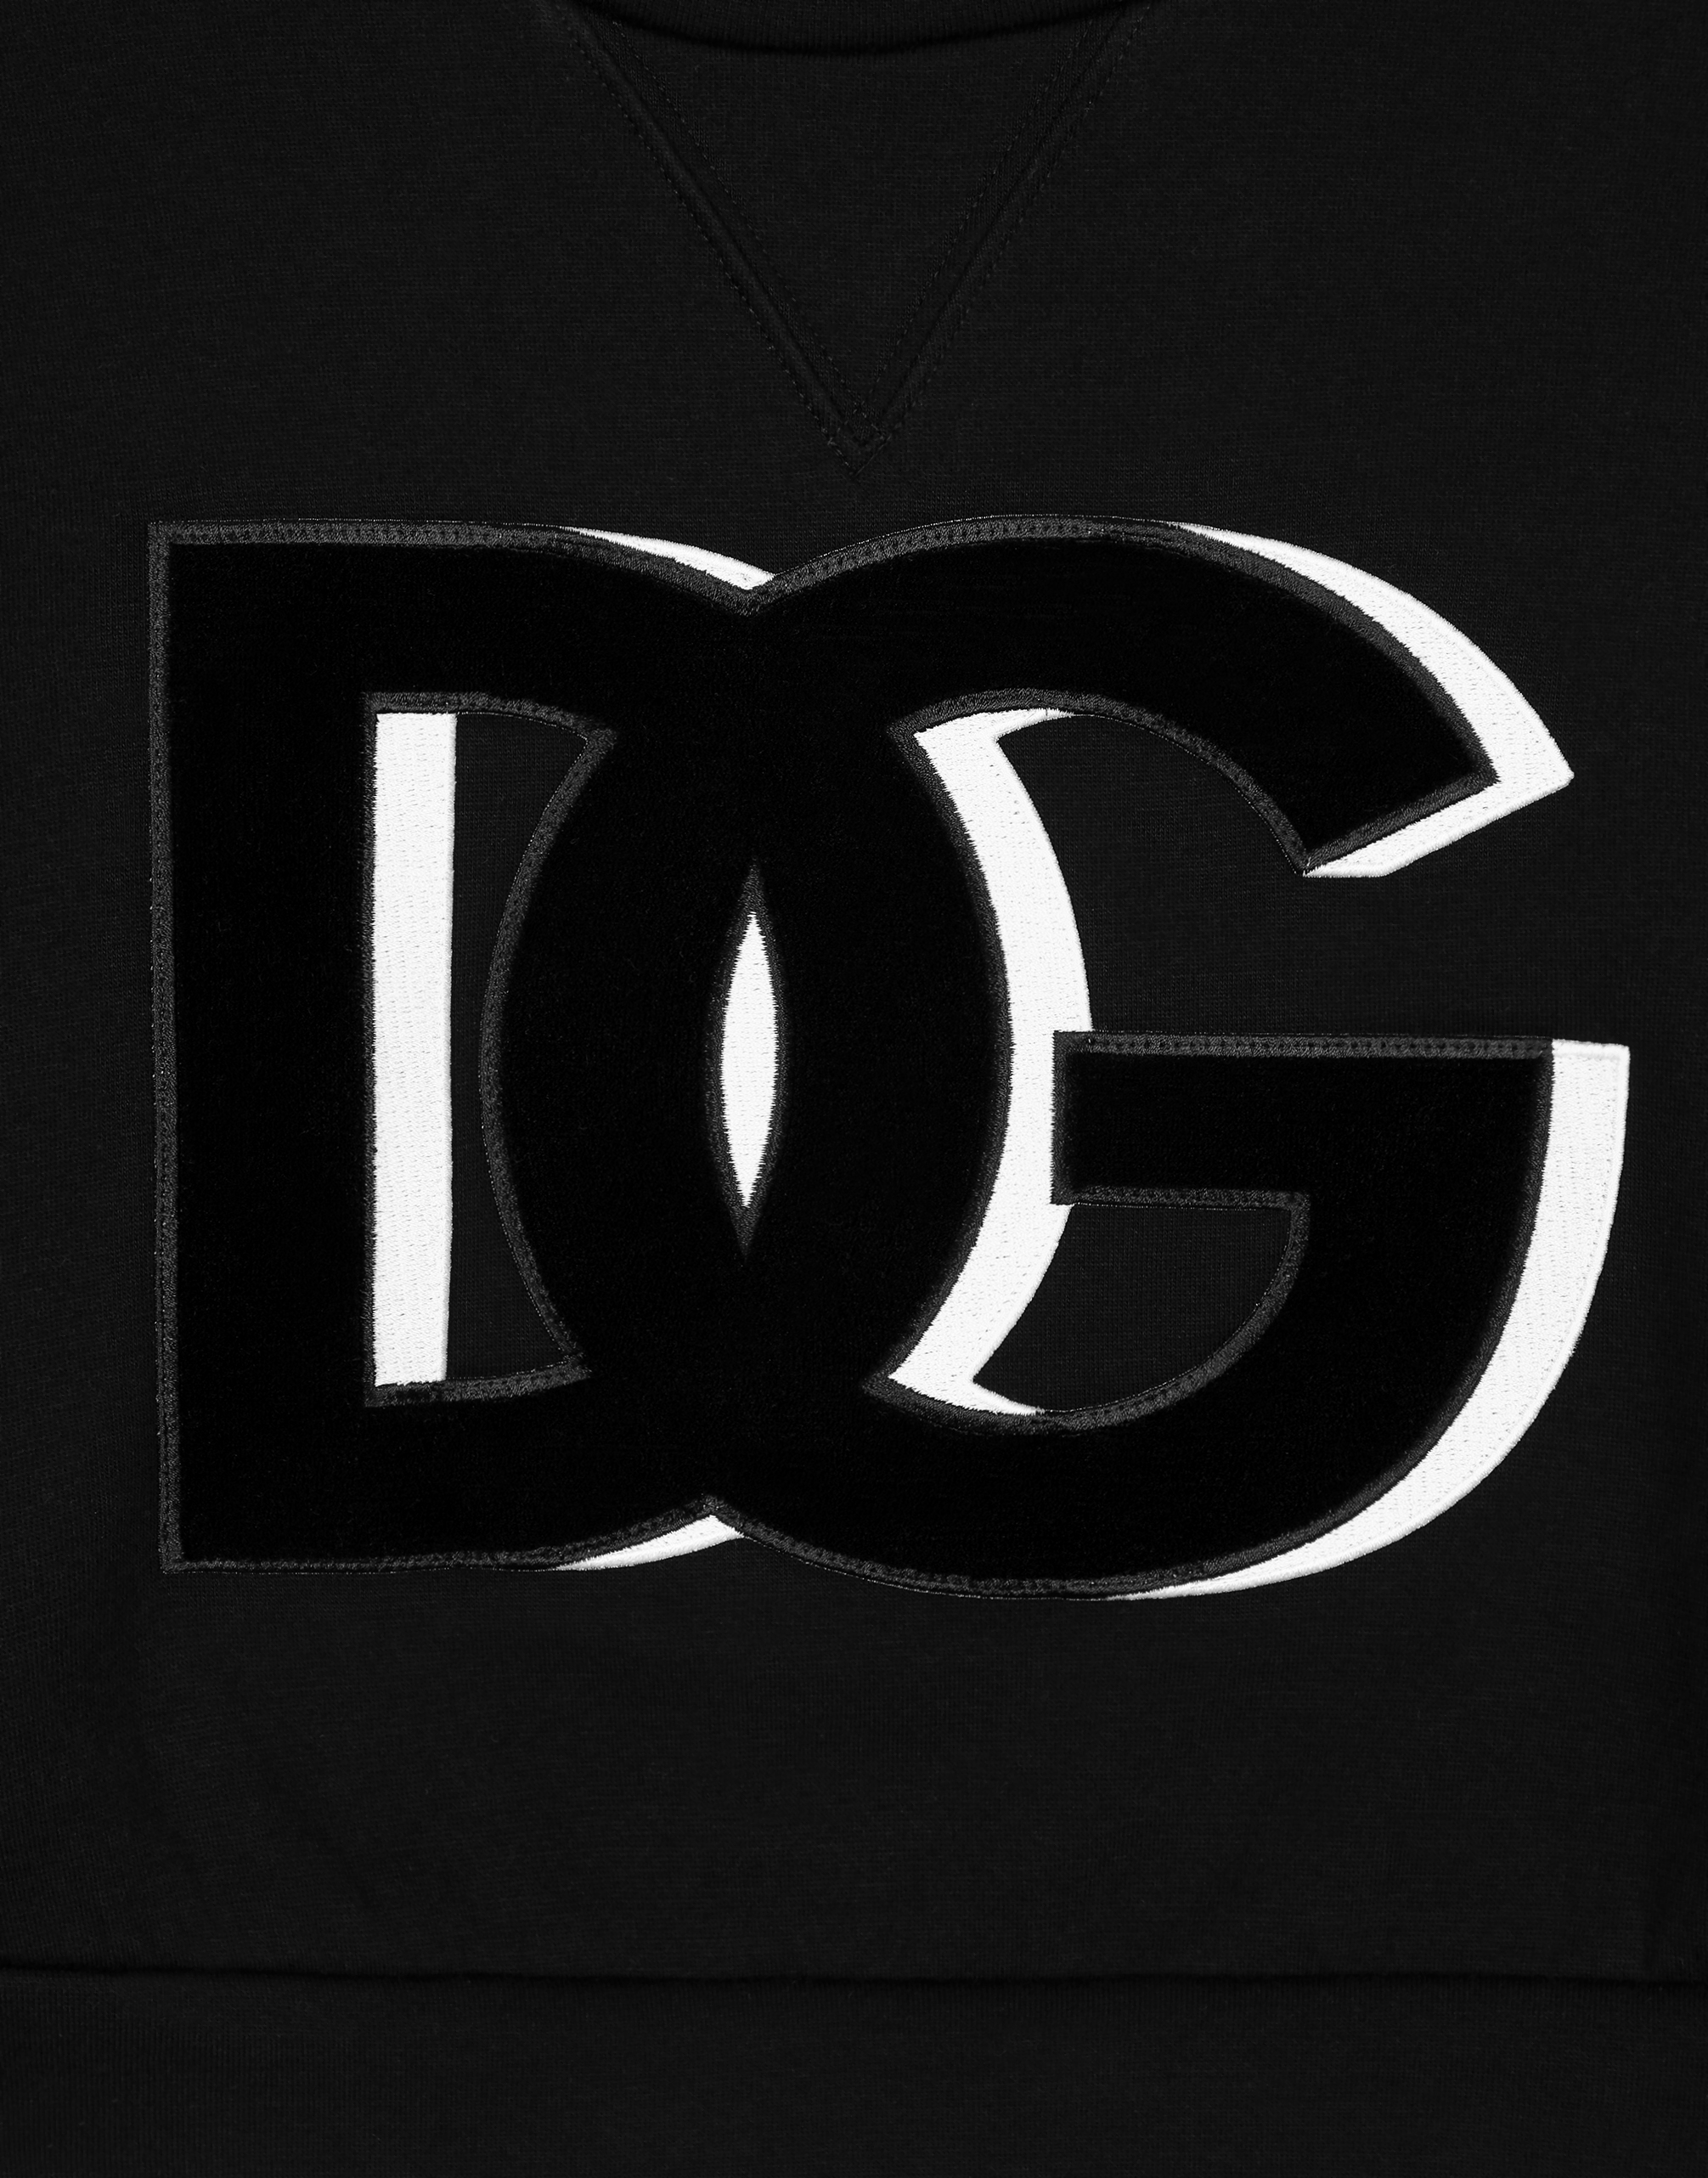 Shop Dolce & Gabbana Felpa Giroc.man.lung In Black